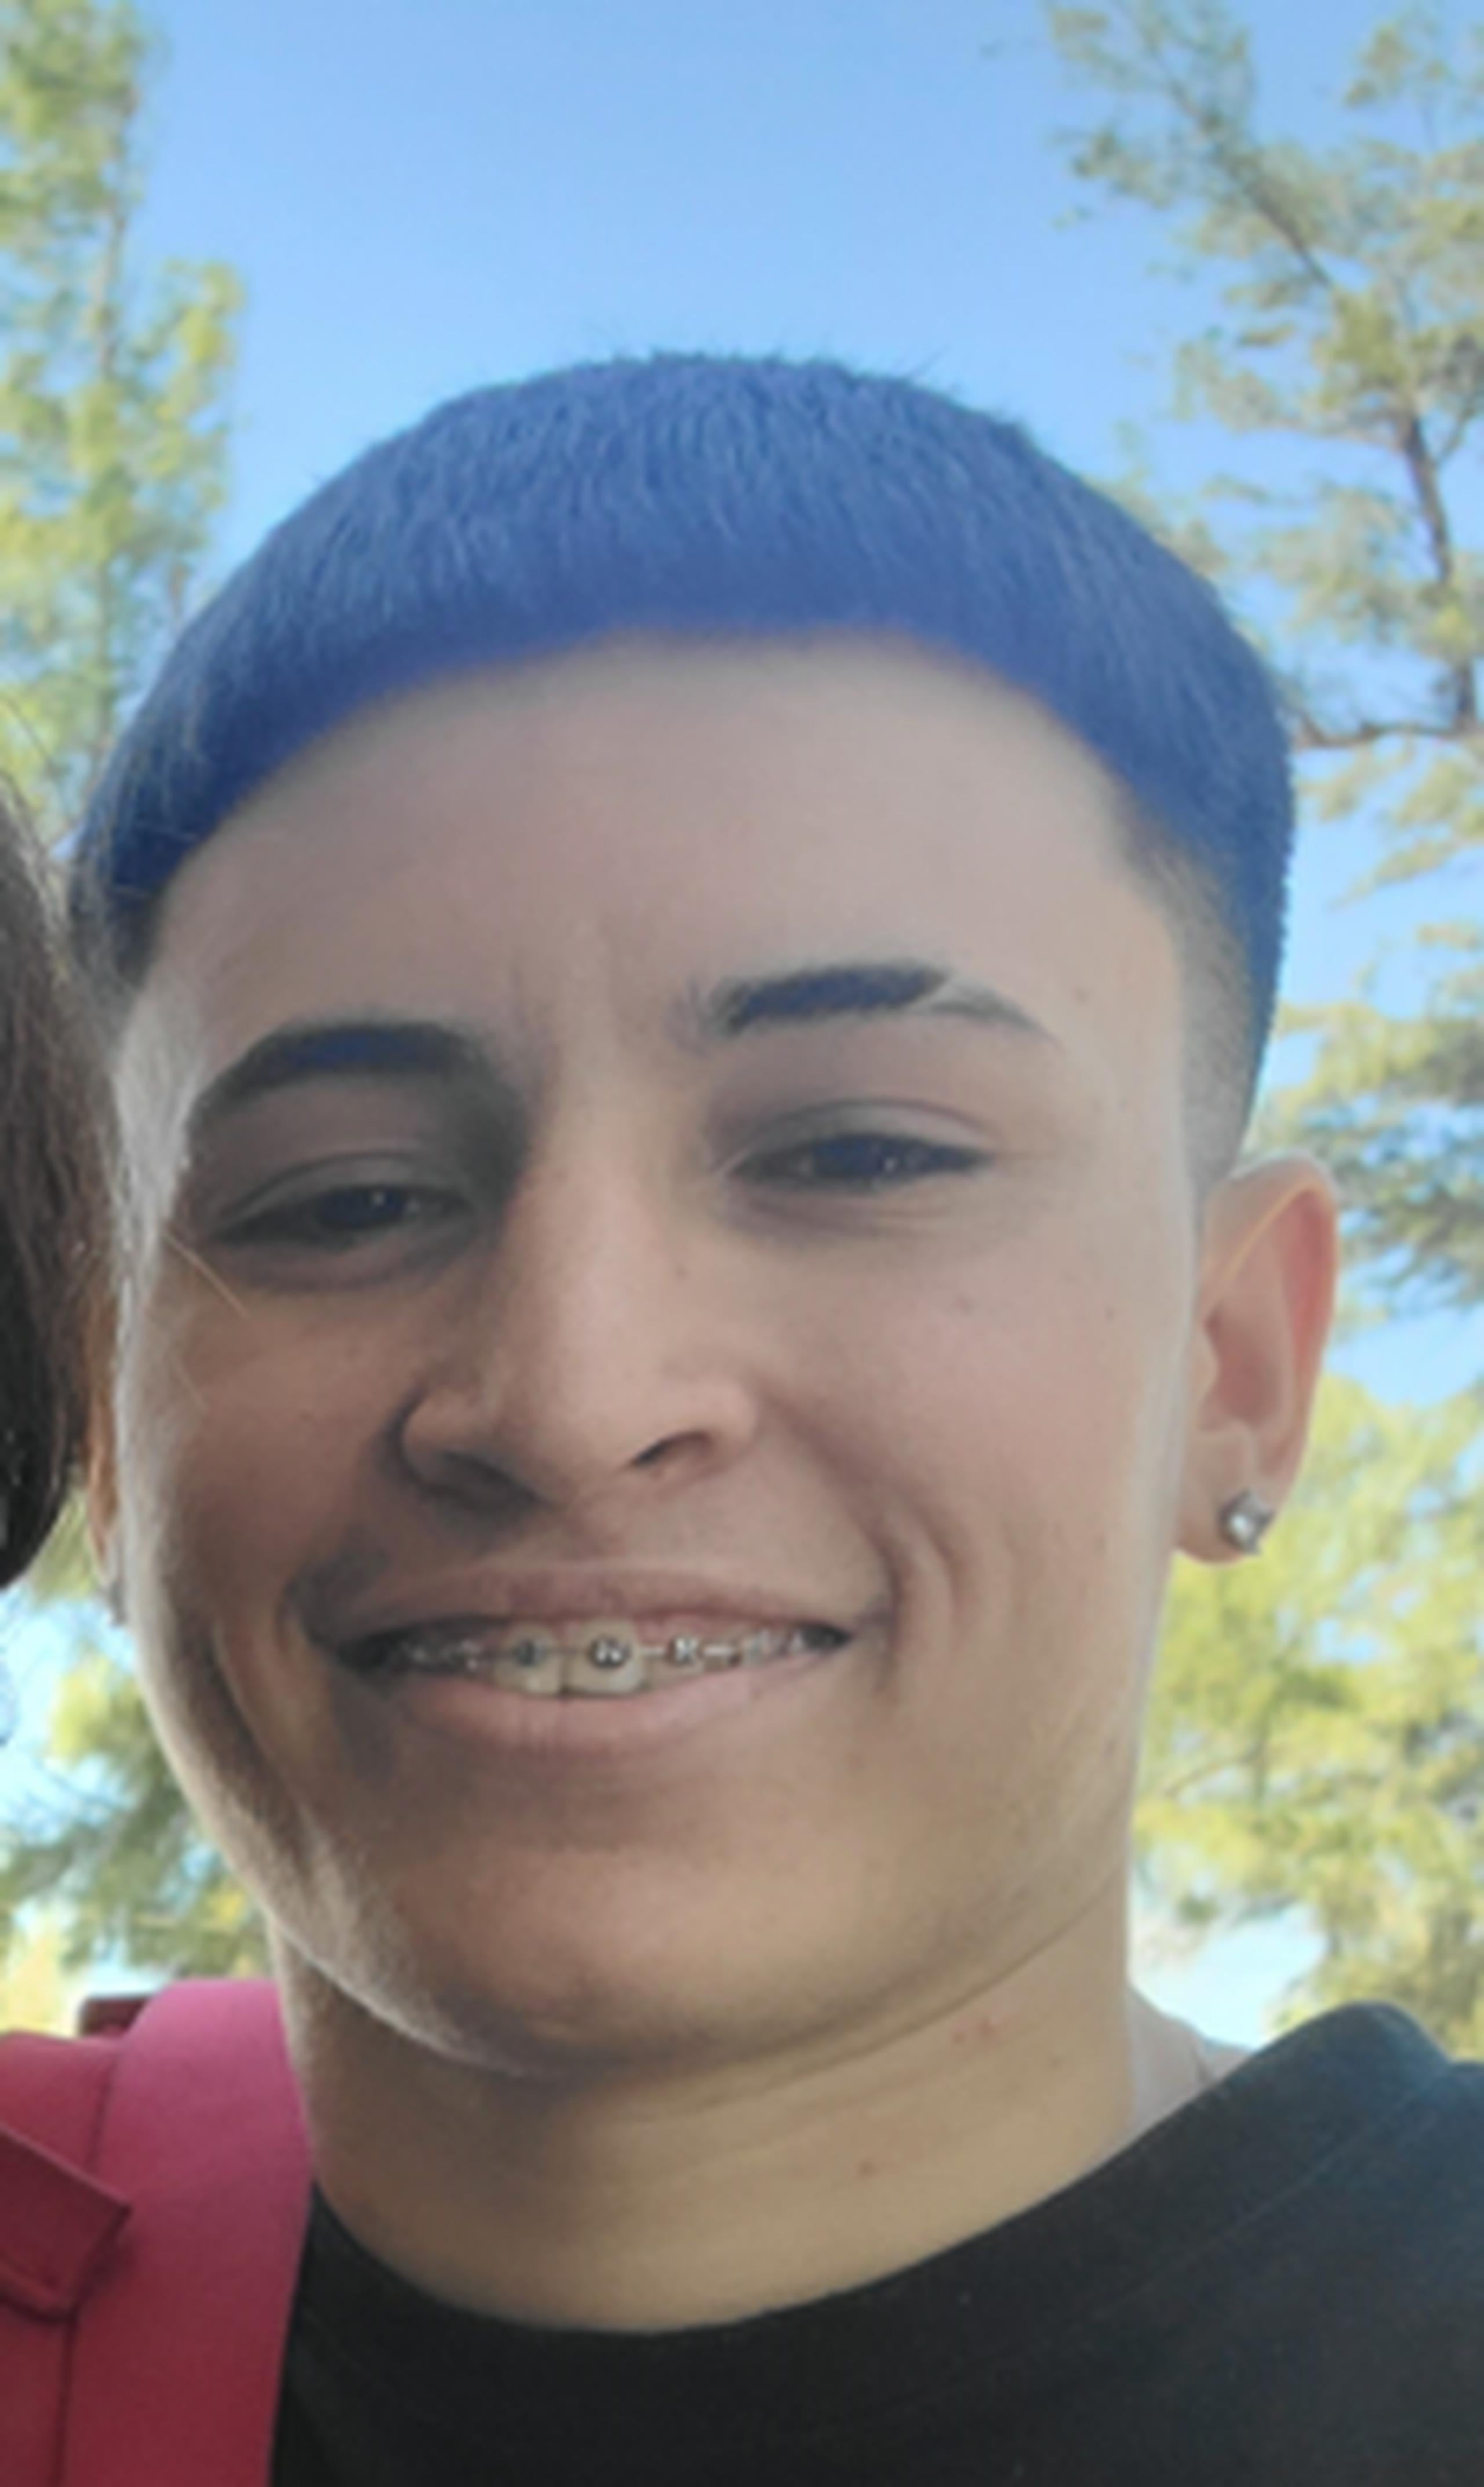 Ricardo Germán Serrano González de 19 años, quien fue visto por última vez el 12 de julio, en Barrio Obrero, Santurce. Para confidencias llame al (787) 343-2020.